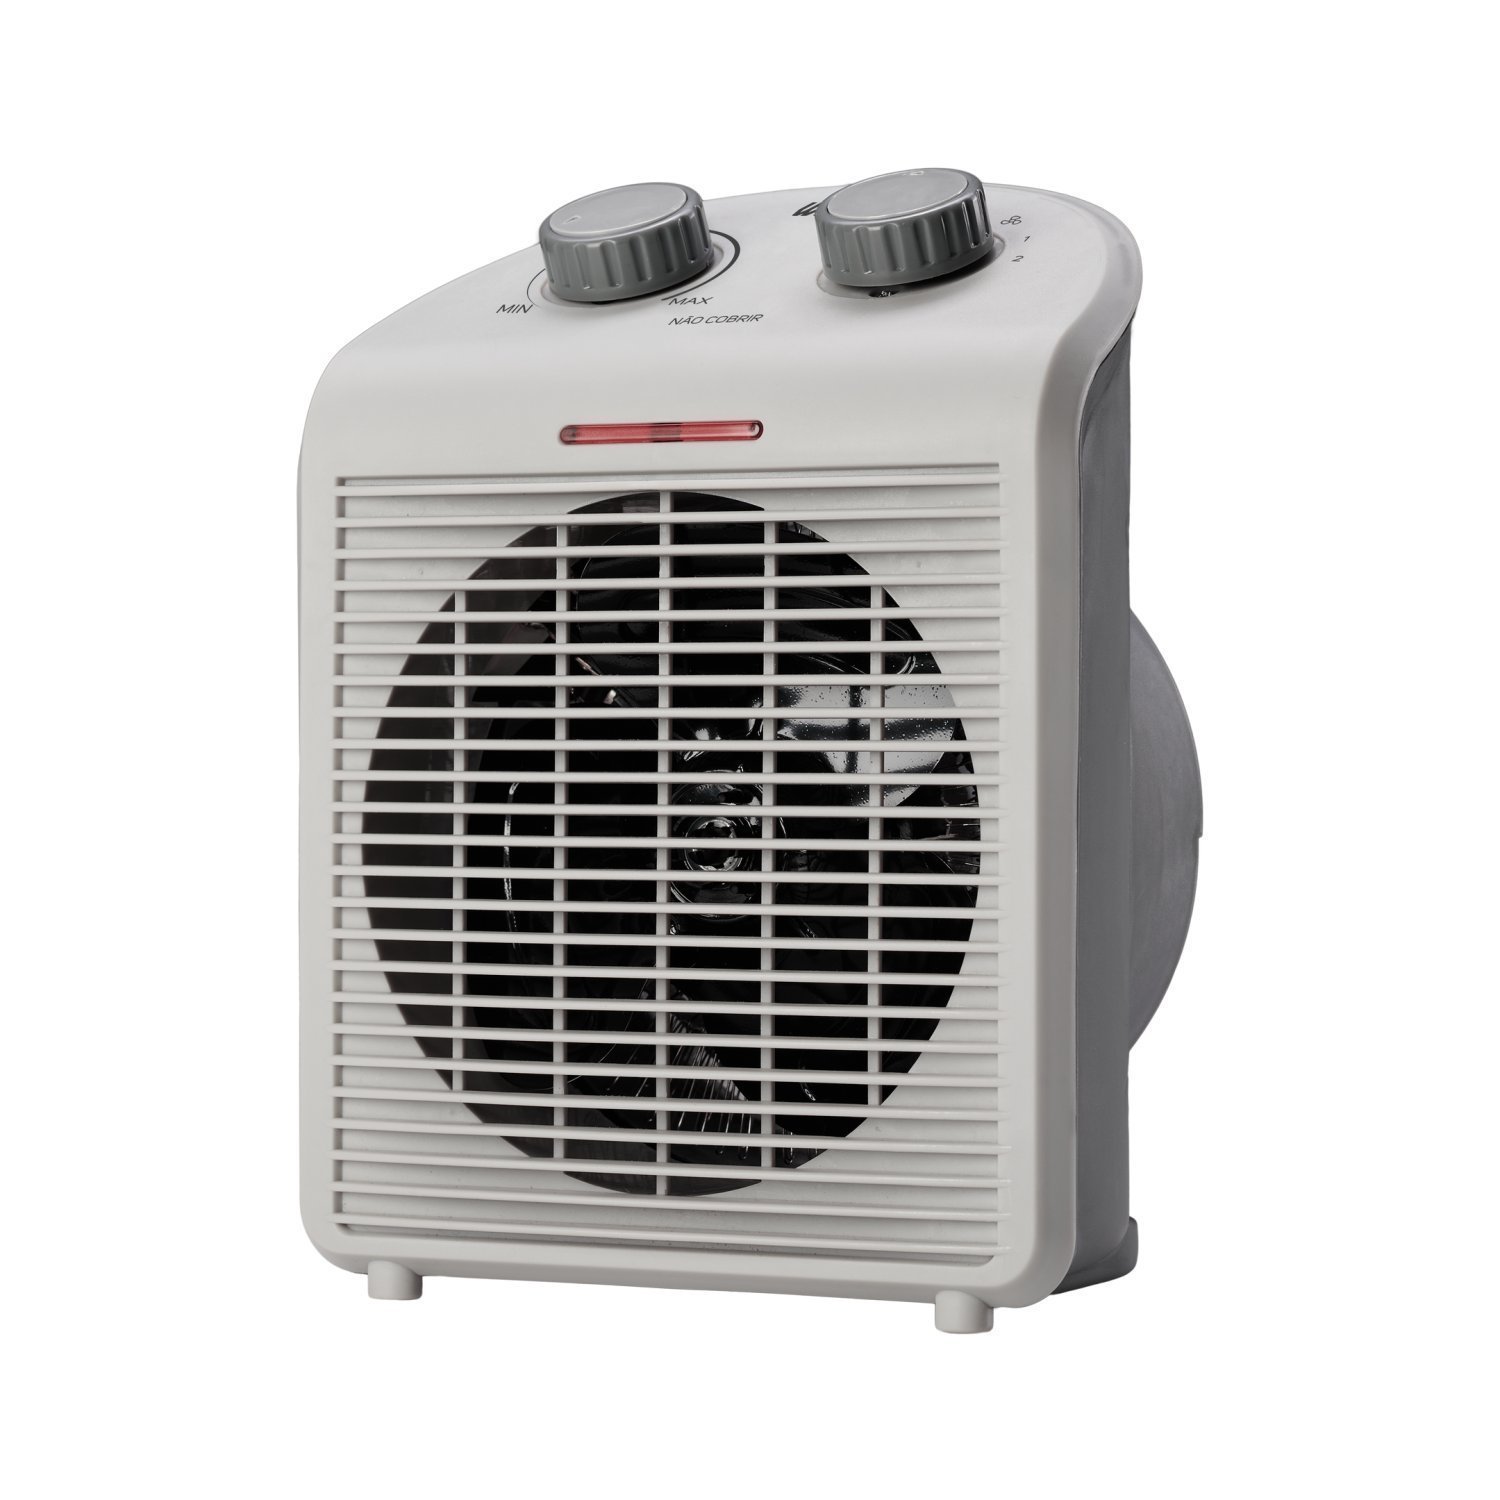 Aquecedor de Ar Portátil Air Heat 3 em 1 1500w 127v WAP Branco - 2